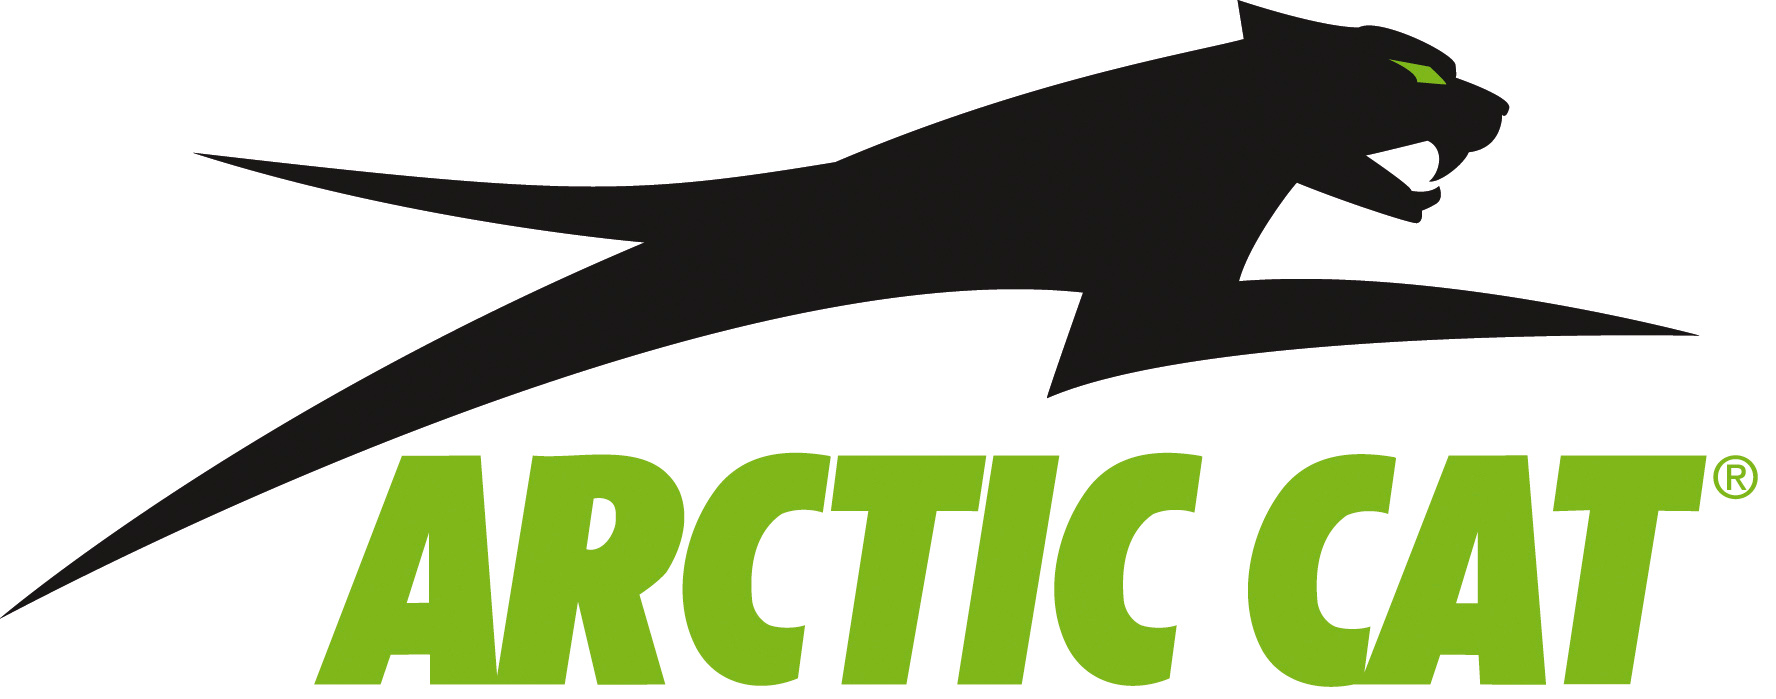 ArcticCat logo